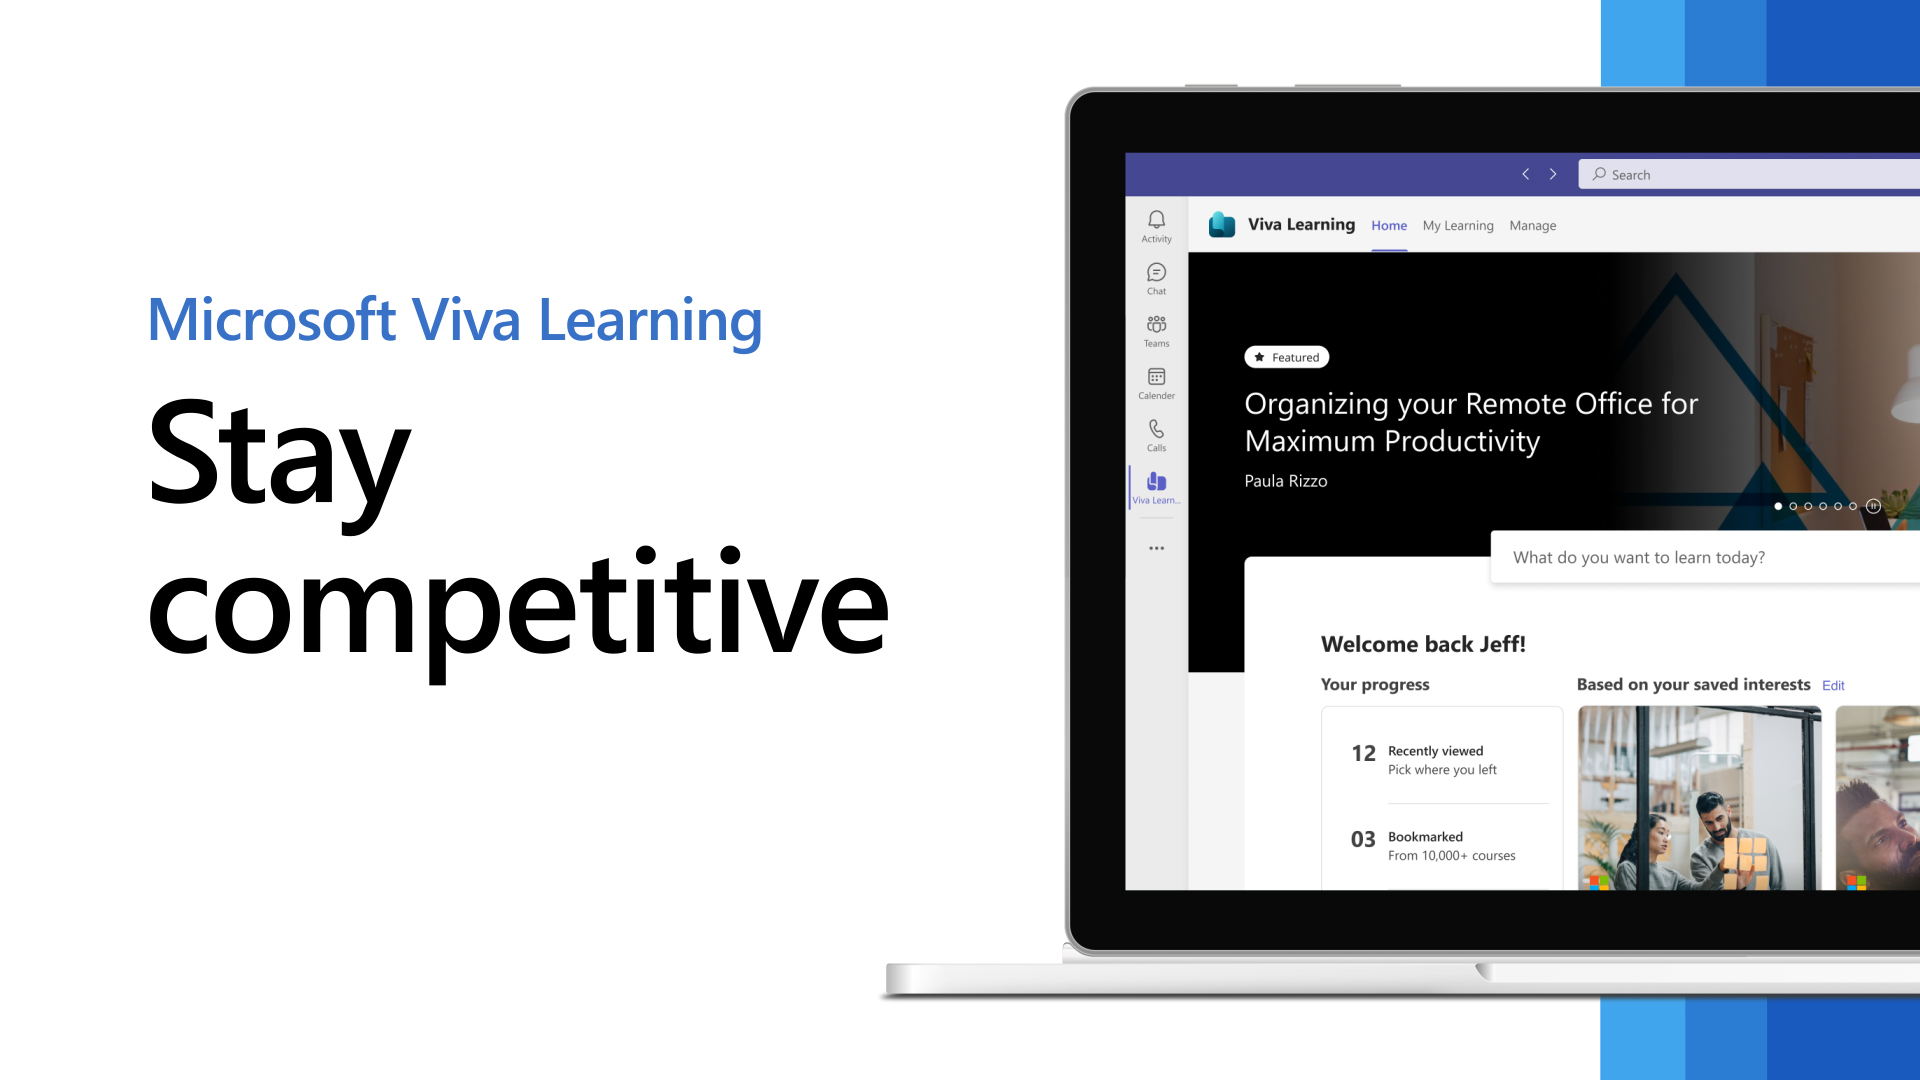 Khám phá hình ảnh của Viva Learning, Microsoft để tìm hiểu những giải pháp và công nghệ tiên tiến nhất trong lĩnh vực học tập và đào tạo, giúp bạn thành công trên con đường sự nghiệp.